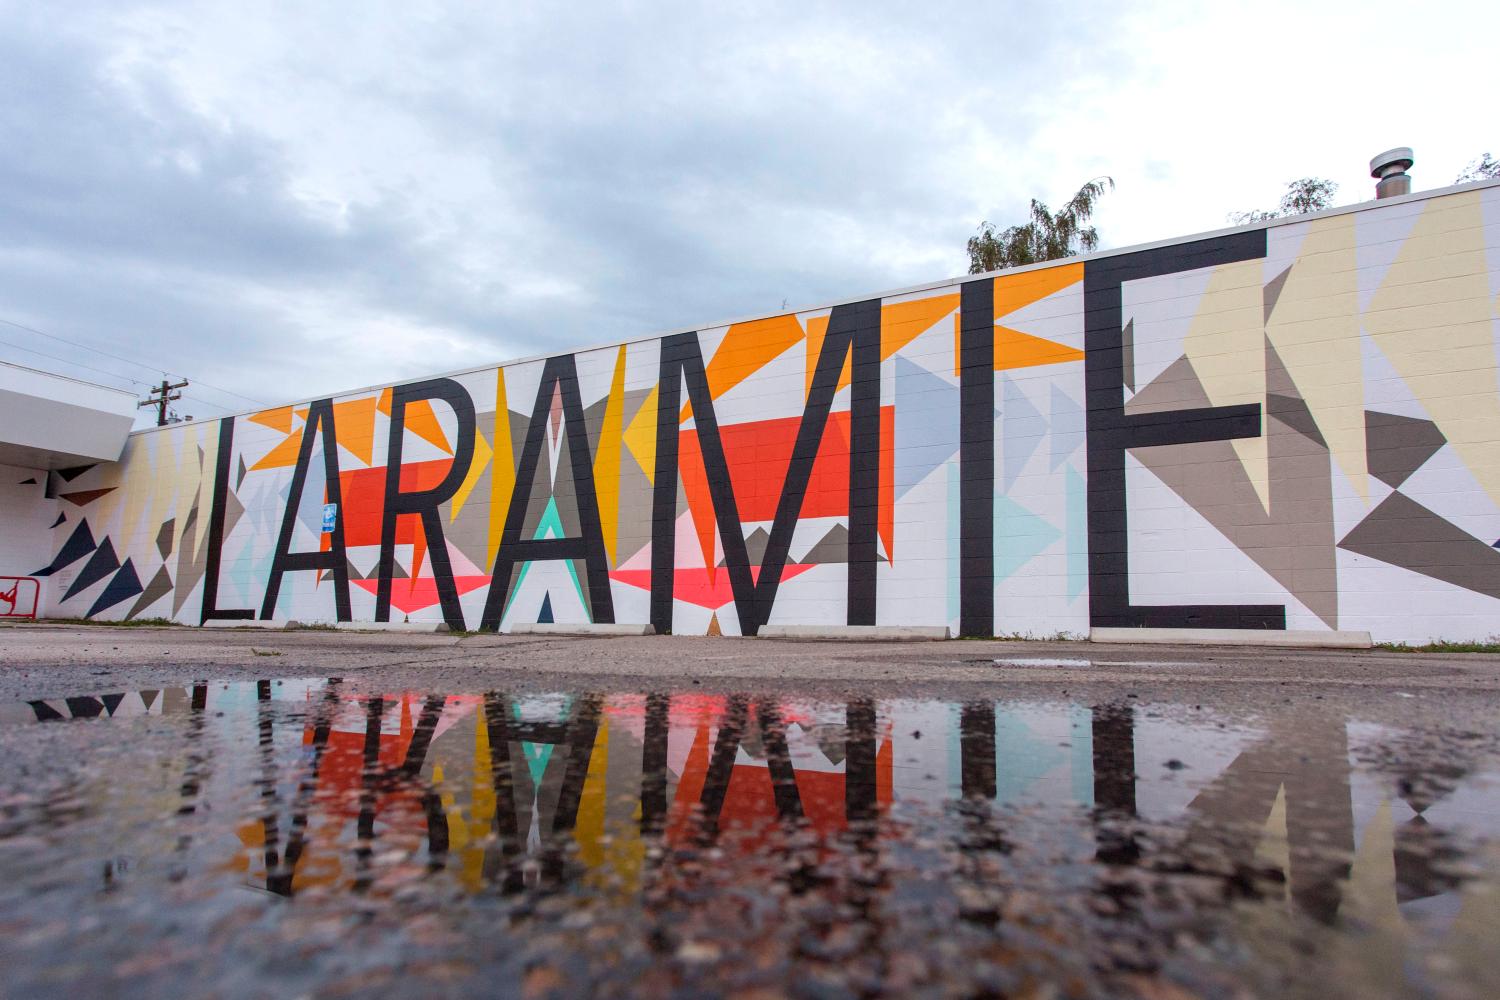 Laramie-mural-photo-by-bhp-imaging